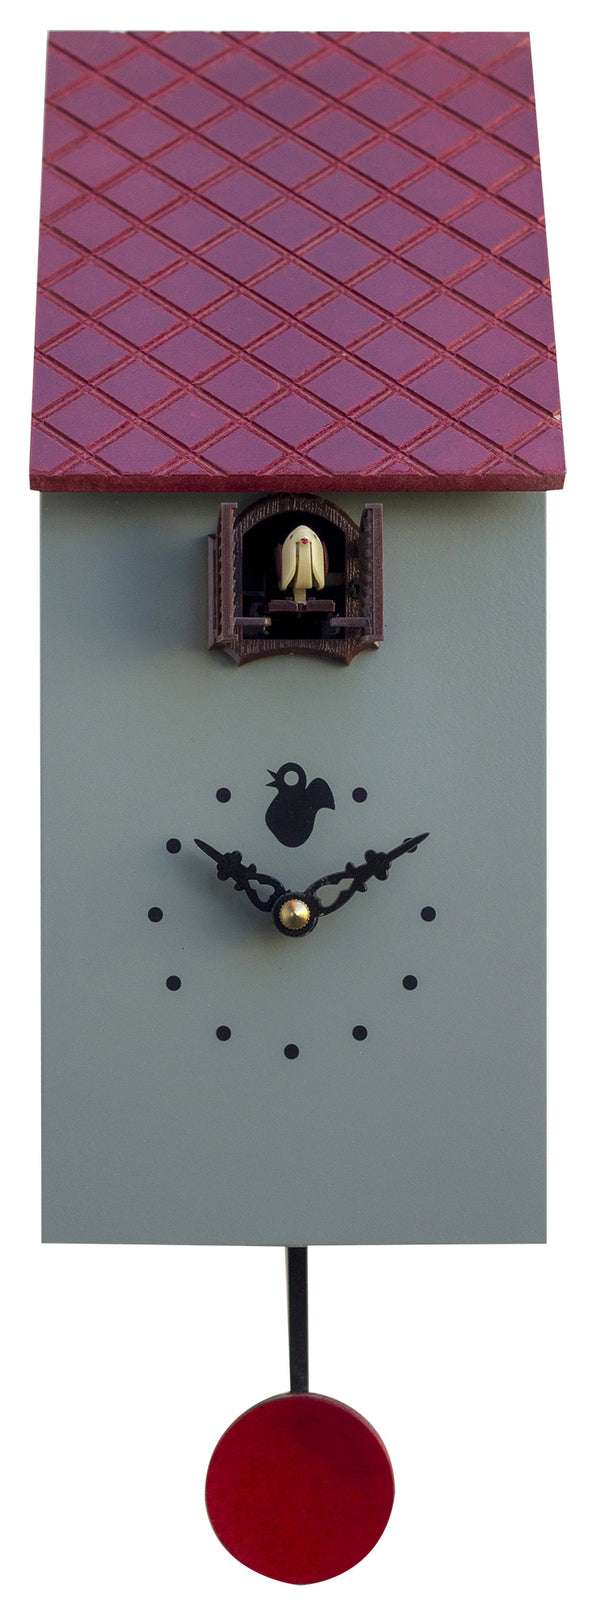 acquista Horloge Coucou Murale 13x30x12 cm Pirondini Italia Portofino Ciment Gris